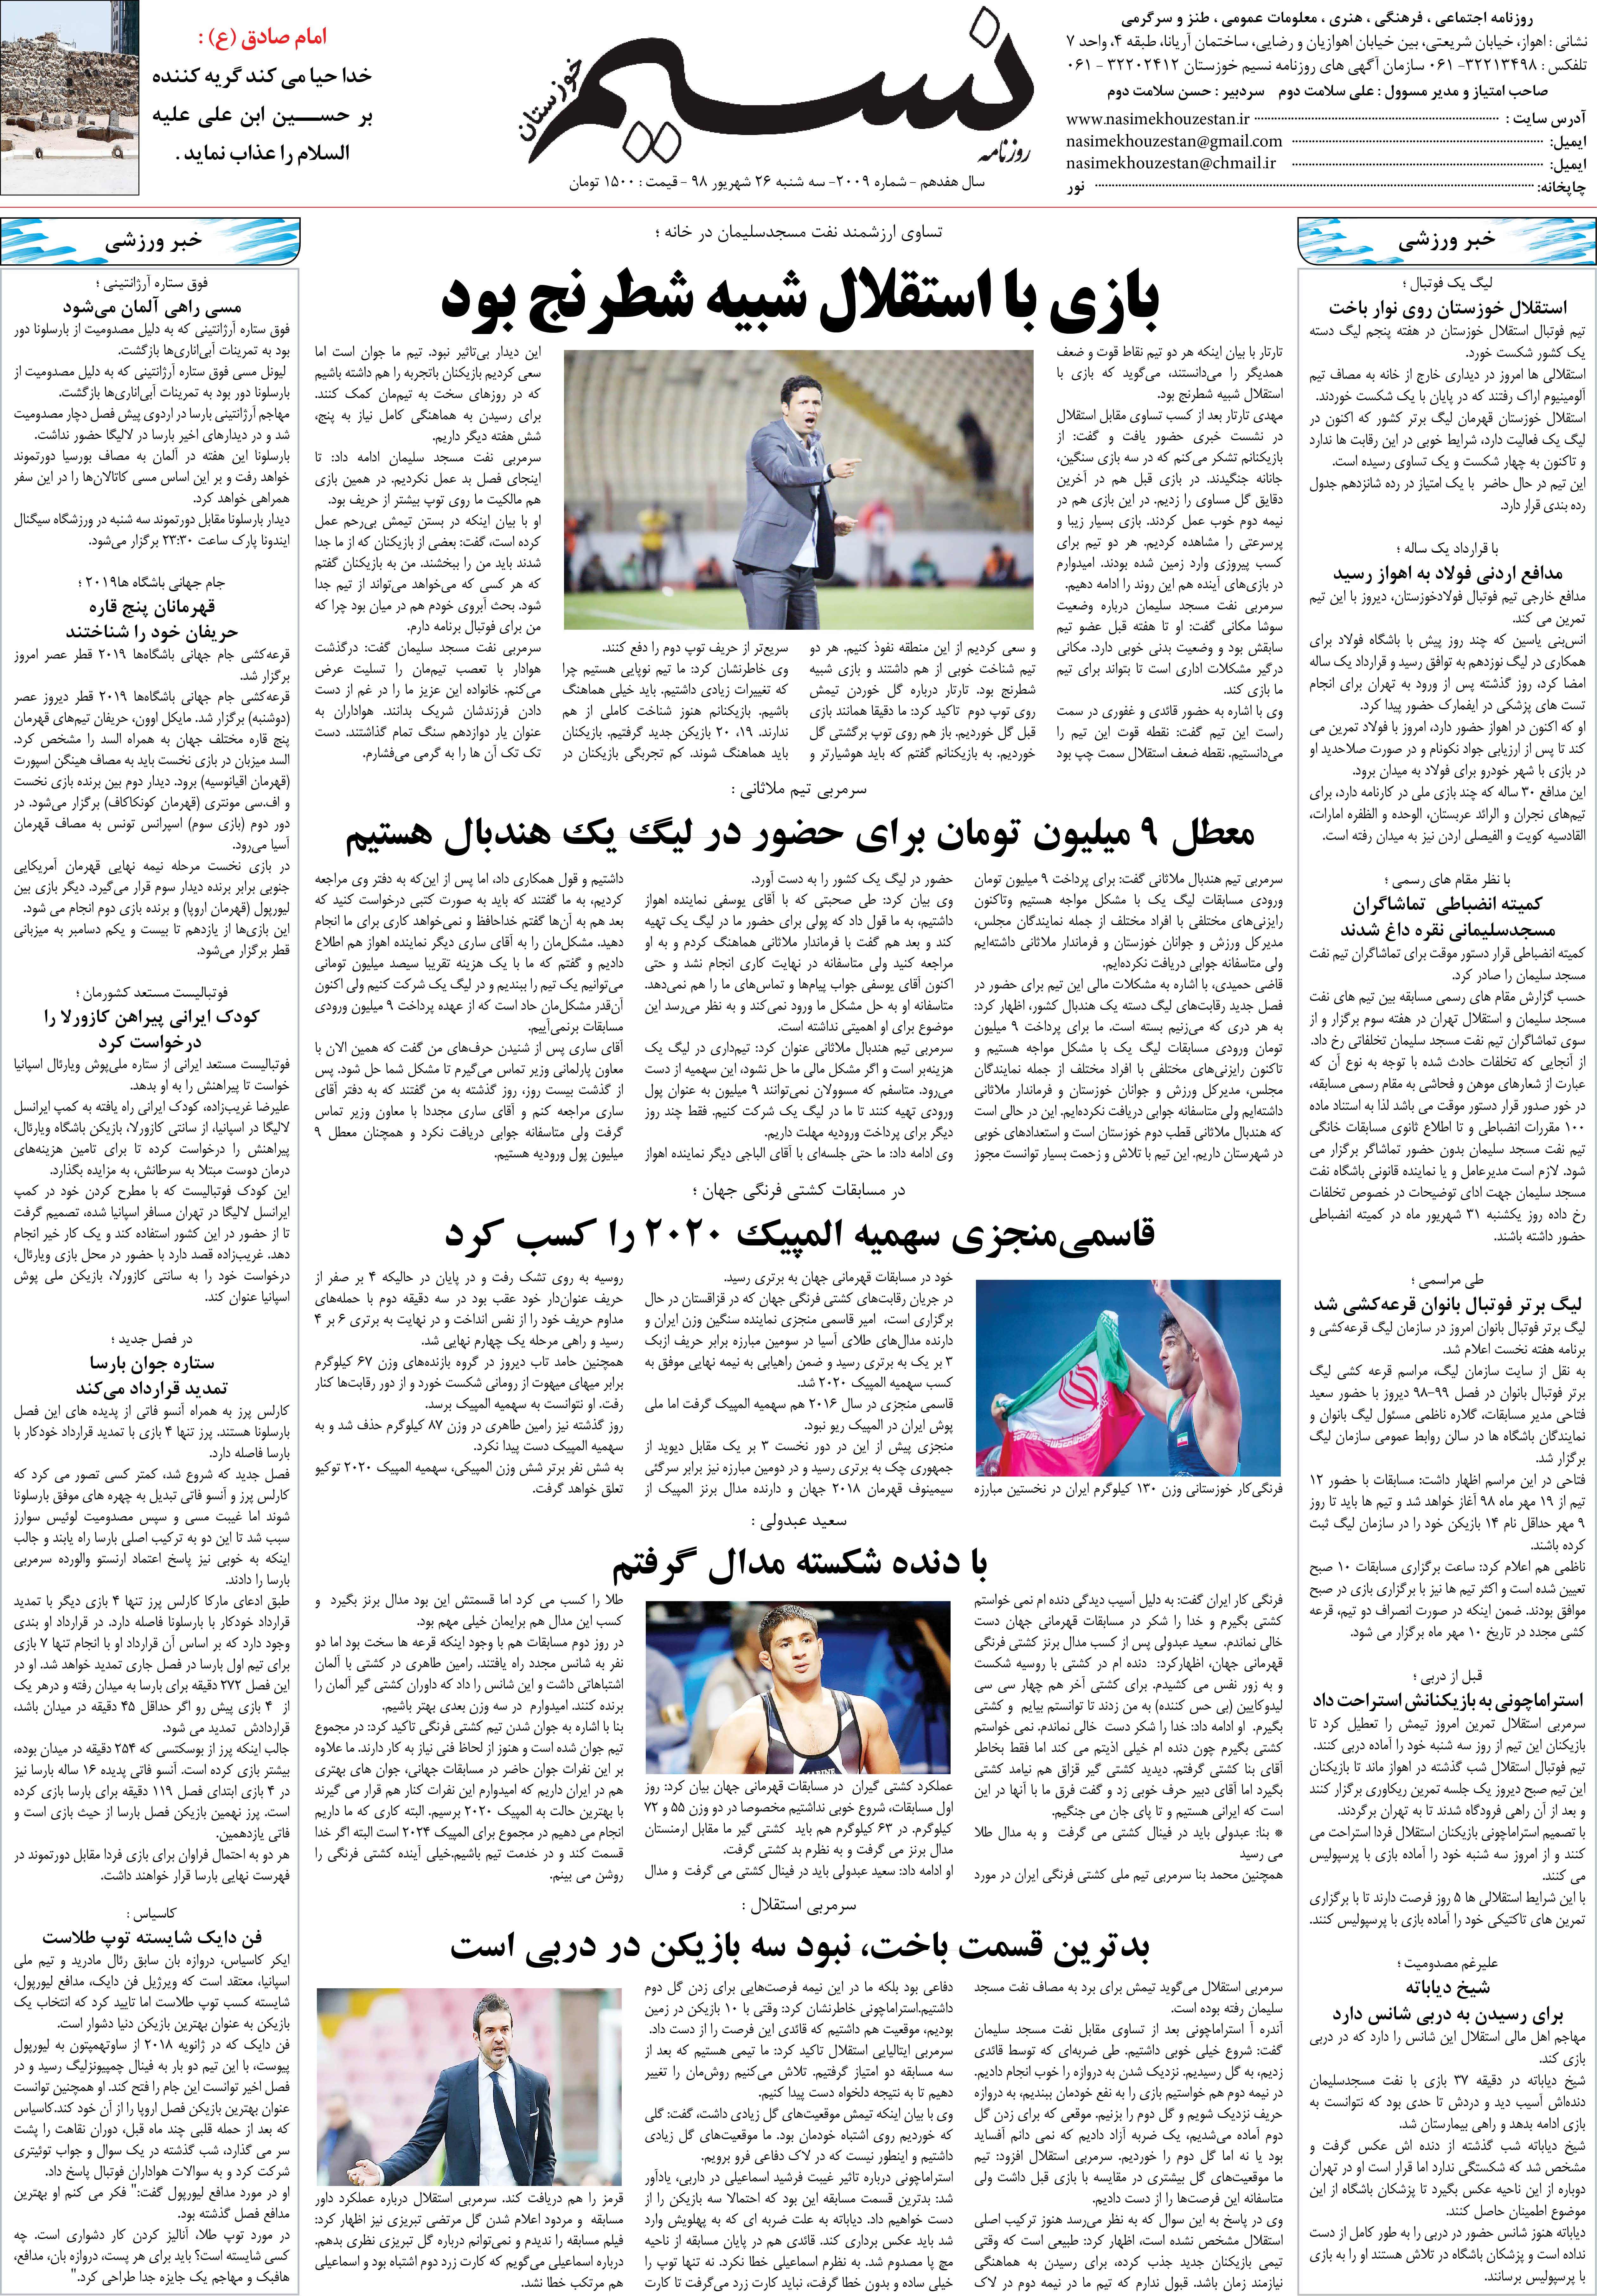 صفحه آخر روزنامه نسیم شماره 2009